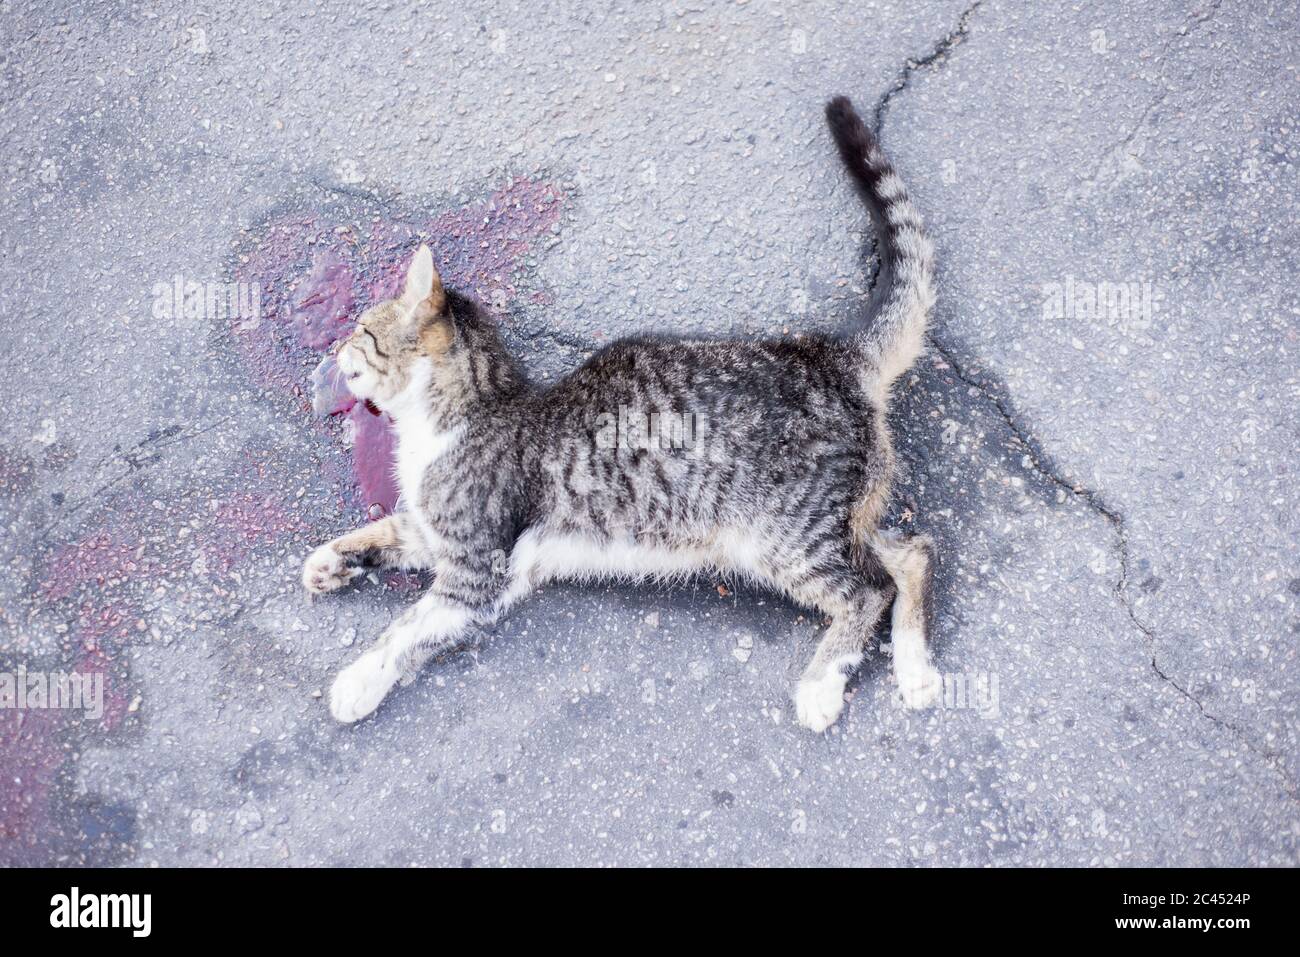 gatto morto, si trova su una strada asfaltata, in una piscina di sangue. Vista dall'alto Foto Stock